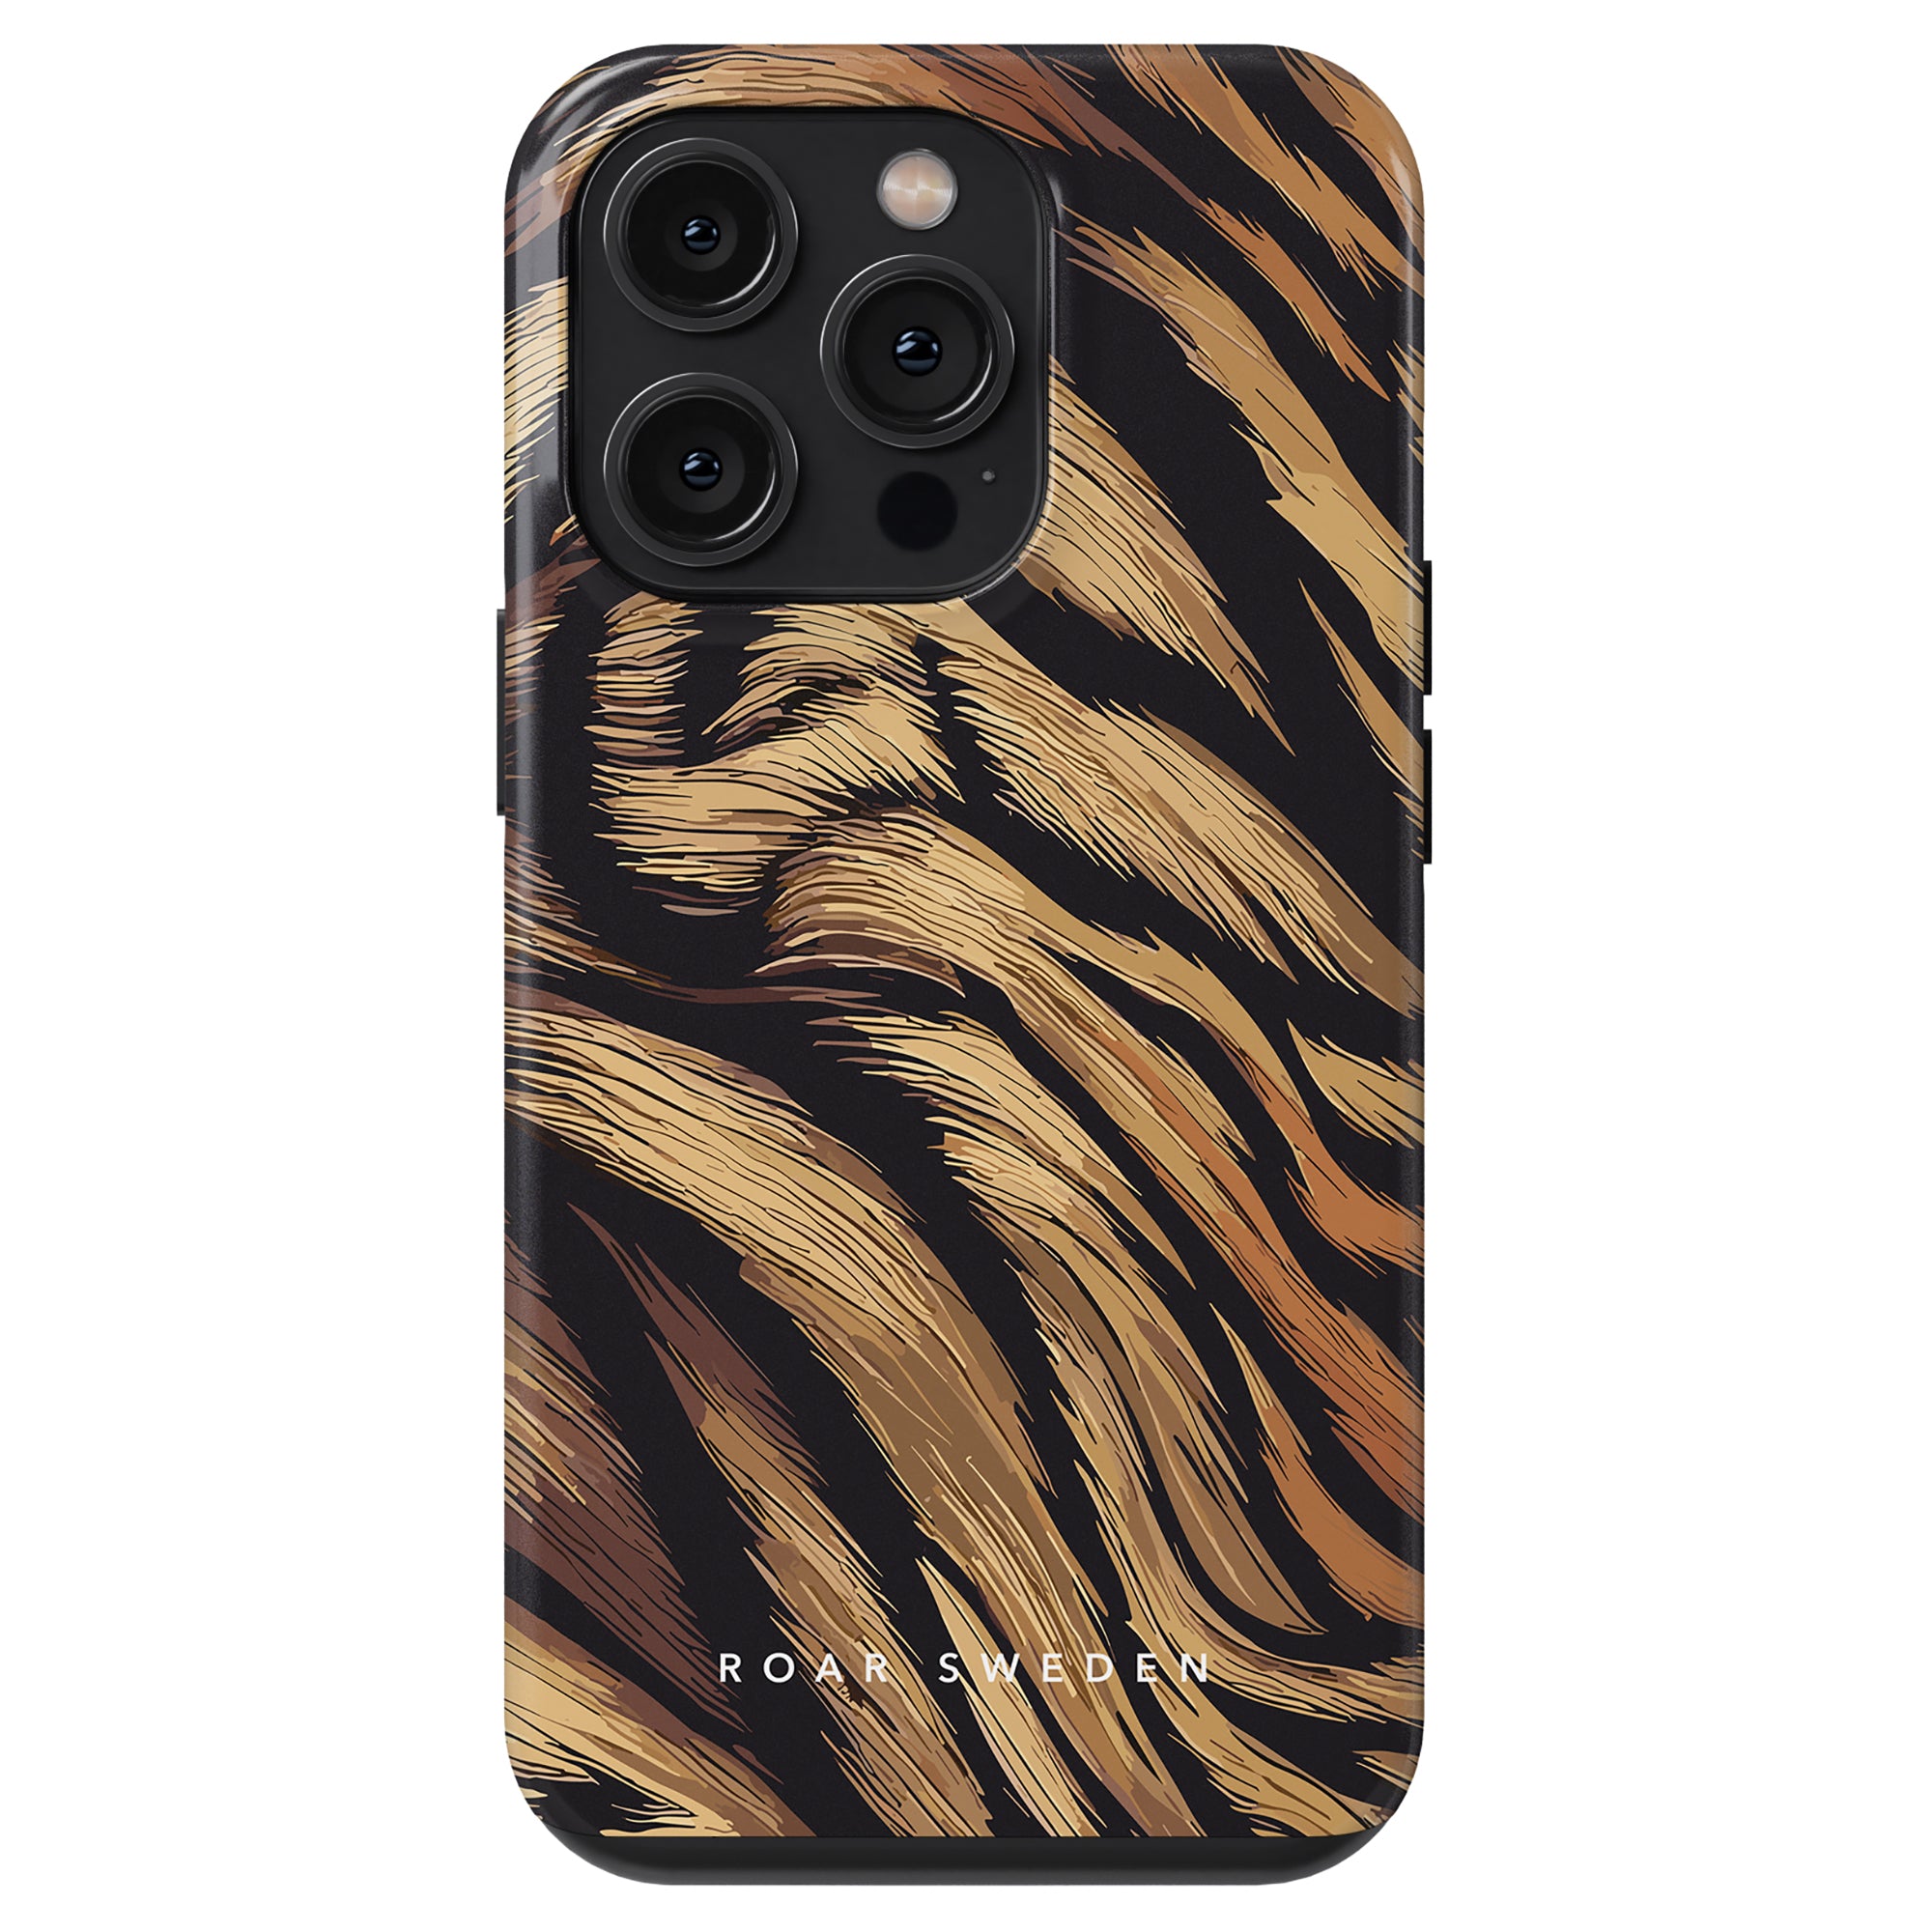 The Tiger Fur - Tough Case visar upp iPhone 11:s vilda och majestätiska skönhet. Tillverkat av högkvalitativa material ger detta fodral hållbarhet och skydd för din telefon. Med dess